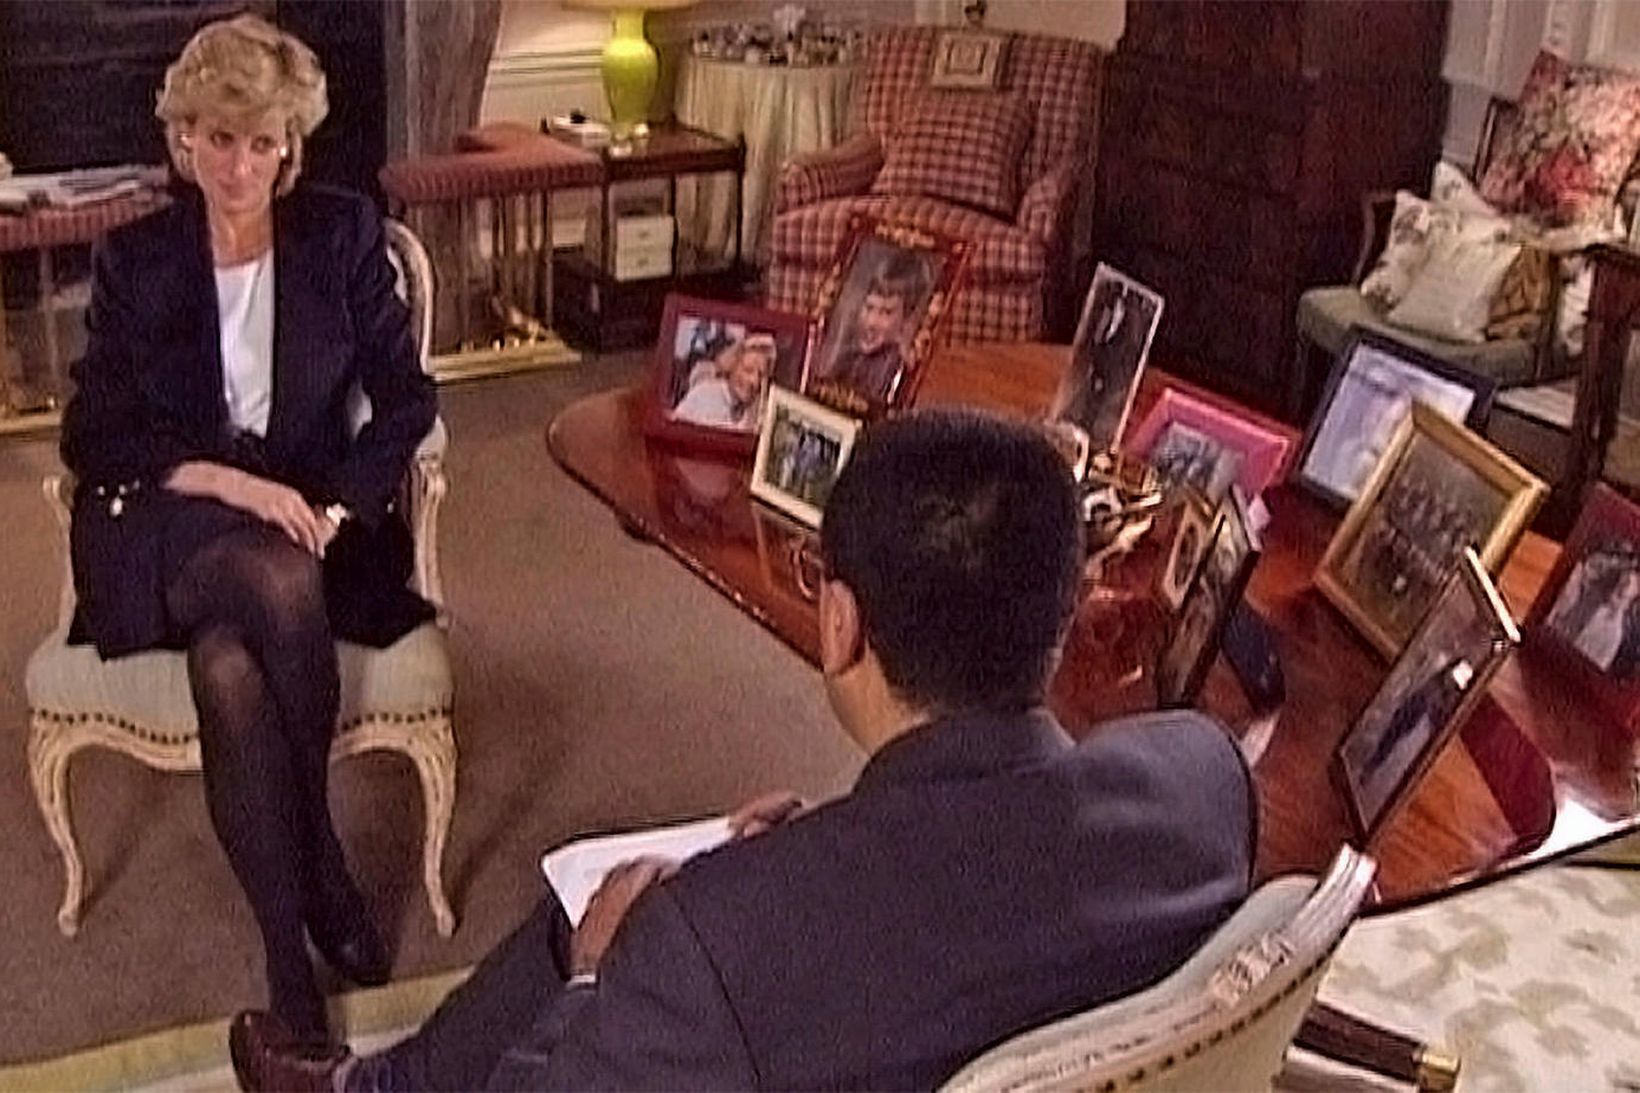 Úr viðtali Martin Bashir við Díönu prinsessu frá árinu 1995.